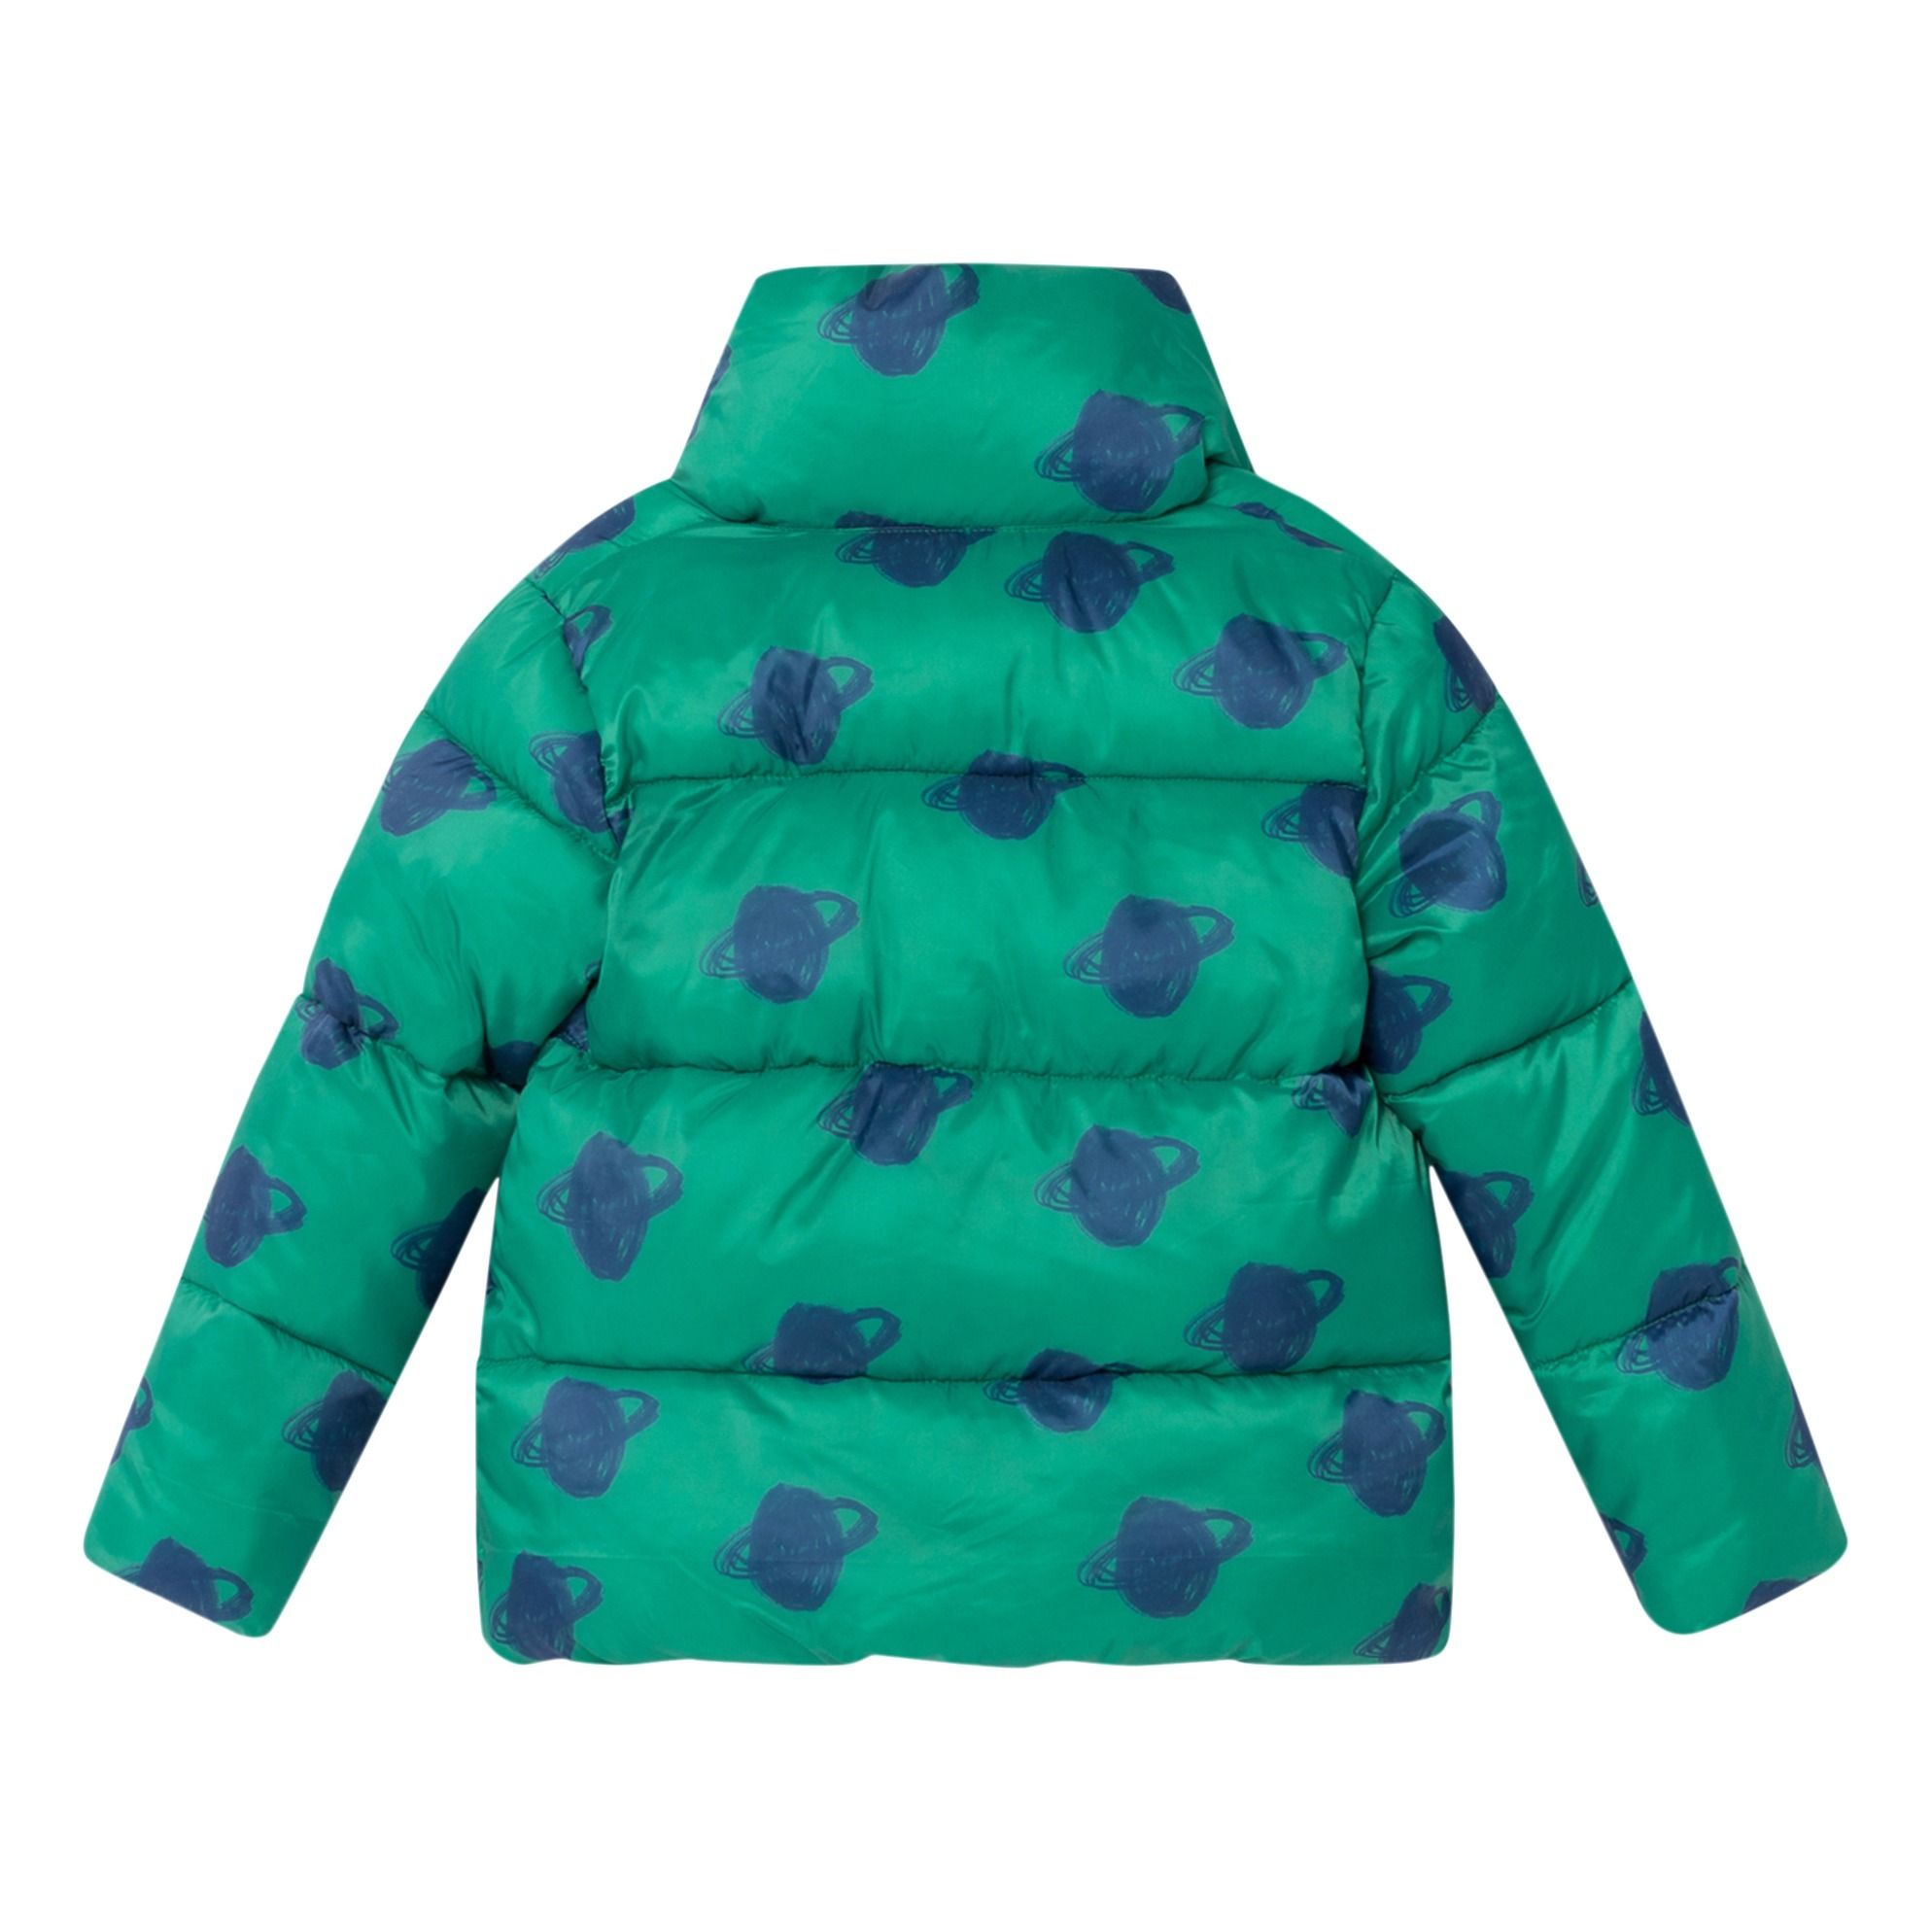 Planet Down Jacket Green Bobo Choses Fashion Children